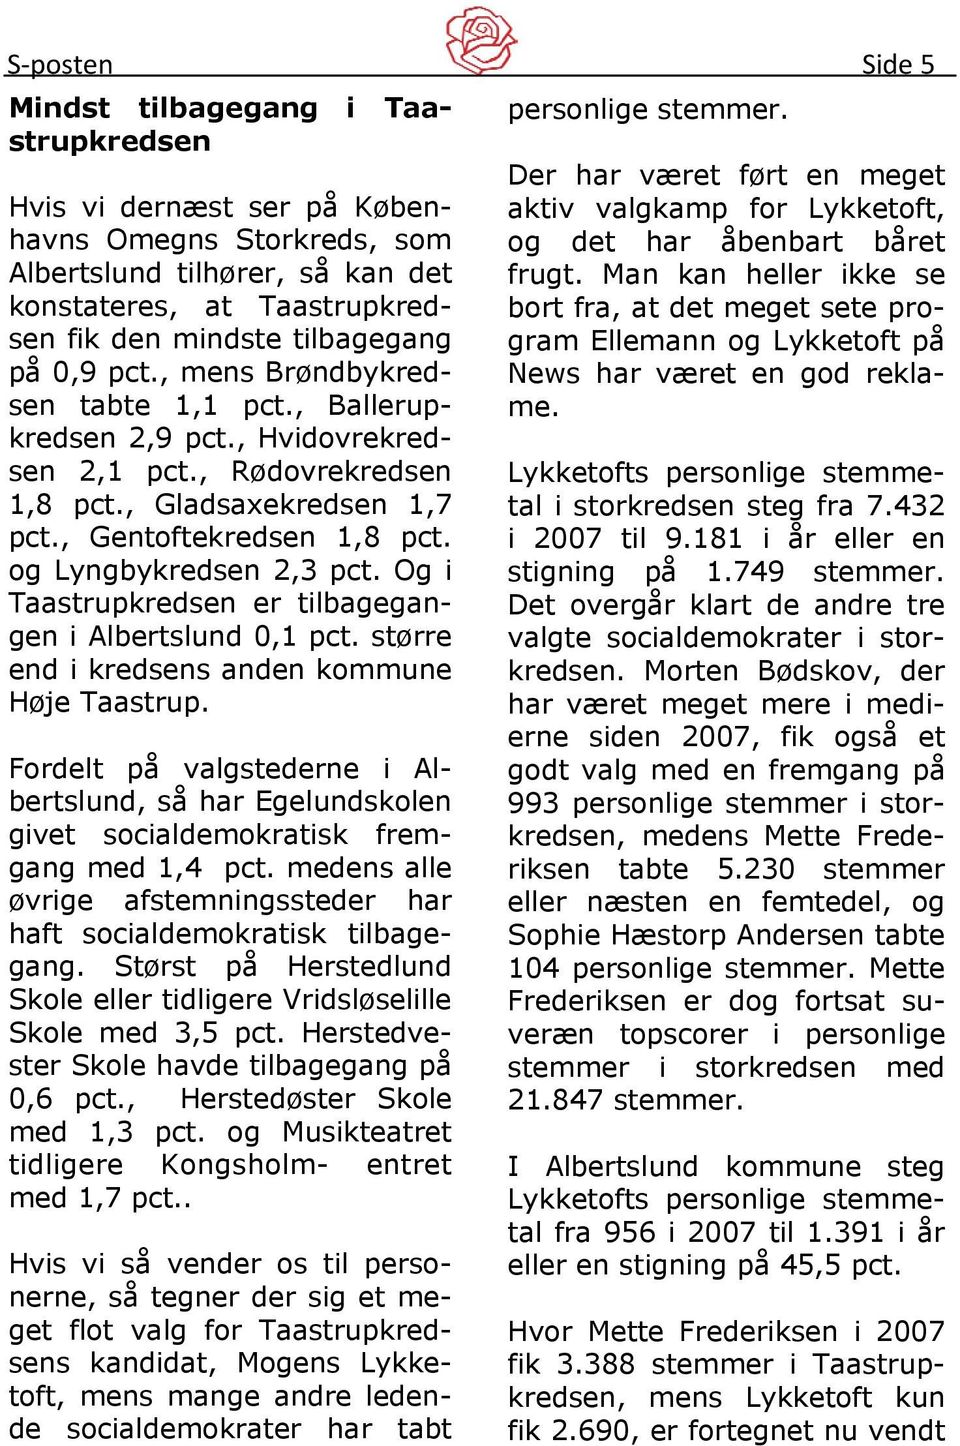 Og i Taastrupkredsen er tilbagegangen i Albertslund 0,1 pct. større end i kredsens anden kommune Høje Taastrup.